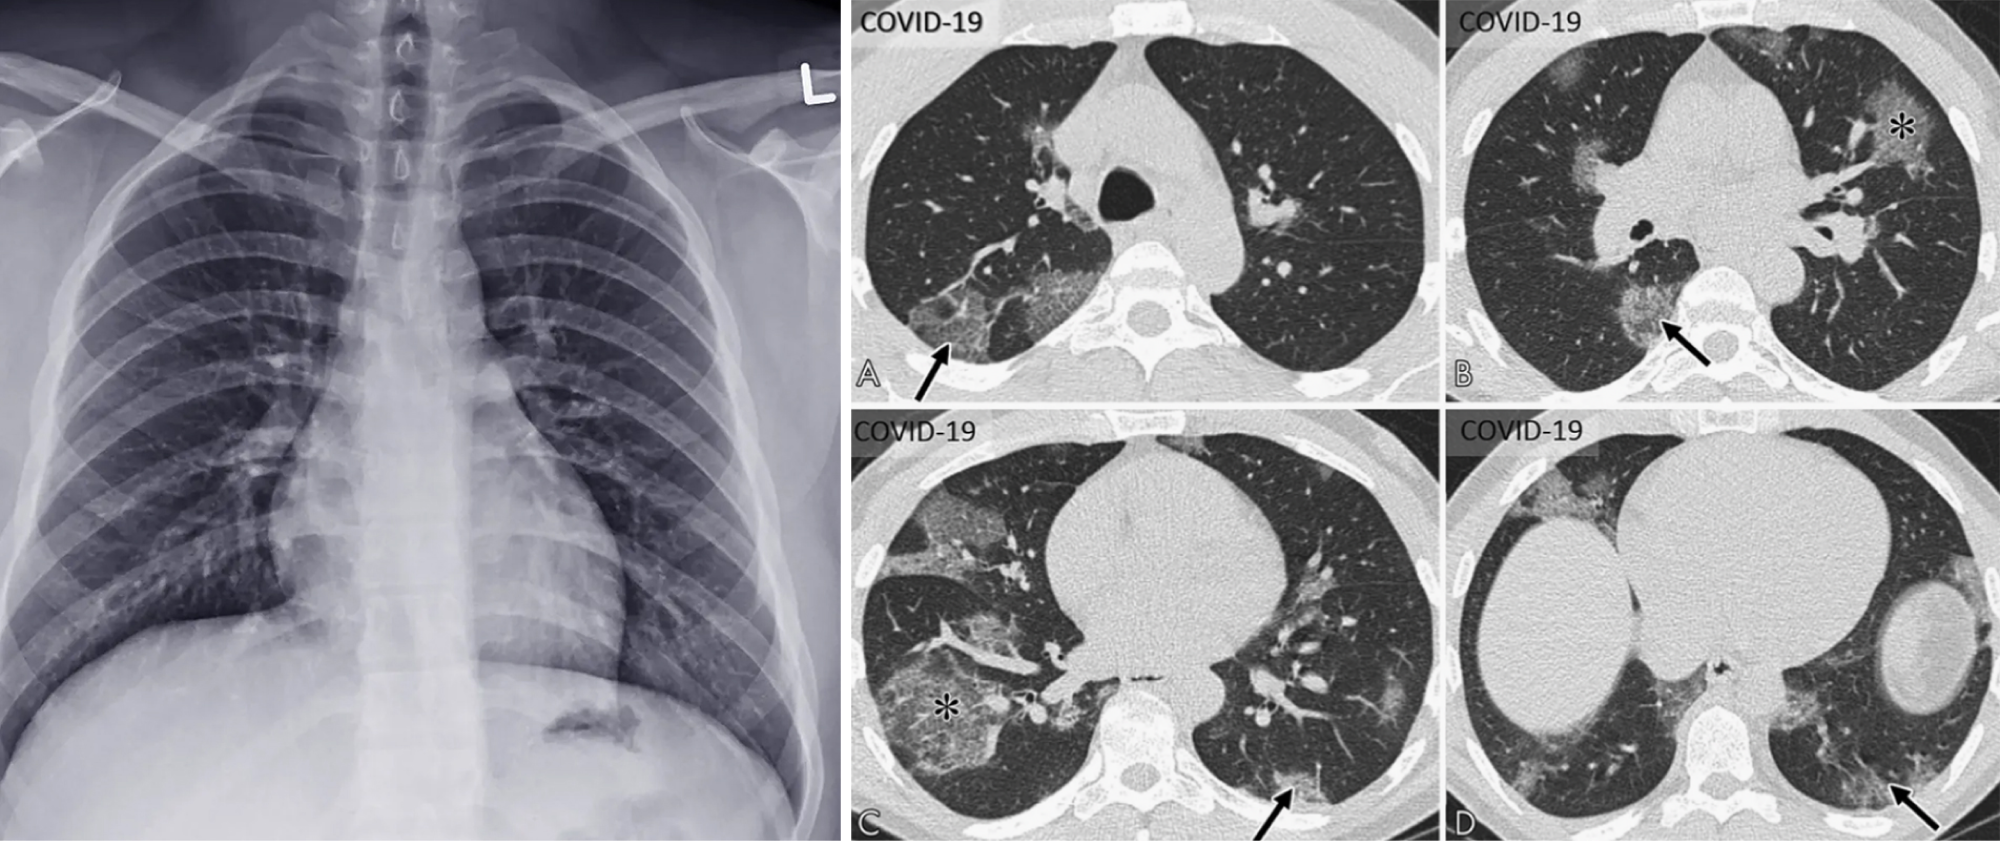 Слева — рентгенограмма грудной клетки, похожая на обычную фотографию. Справа — КТ⁠-⁠изображение грудной клетки, нарезанное на отдельные «ломтики», чтобы врачу было удобнее их изучать